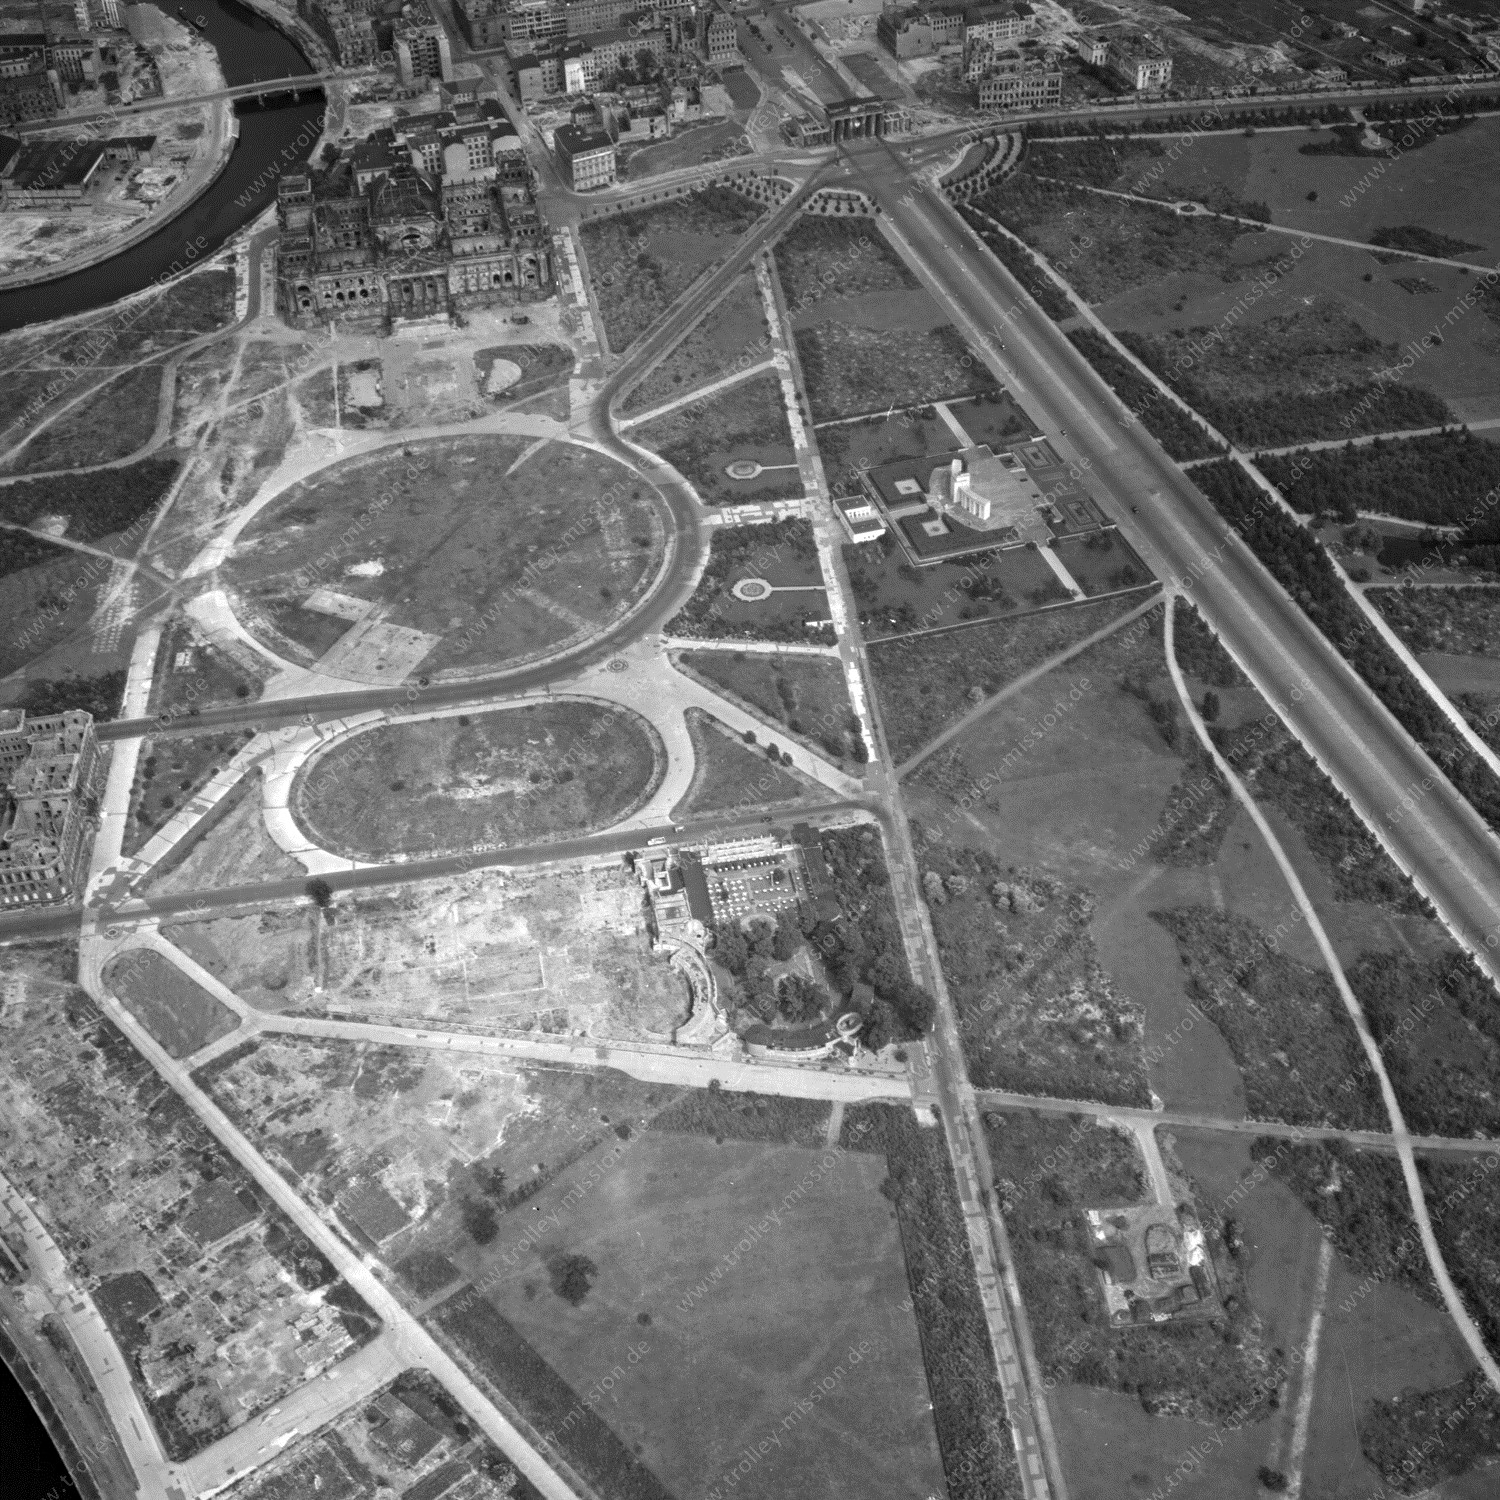 Alte Fotos und Luftbilder von Berlin - Luftbildaufnahme Nr. 06 - Historische Luftaufnahmen von West-Berlin aus dem Jahr 1954 - Flugstrecke Xray